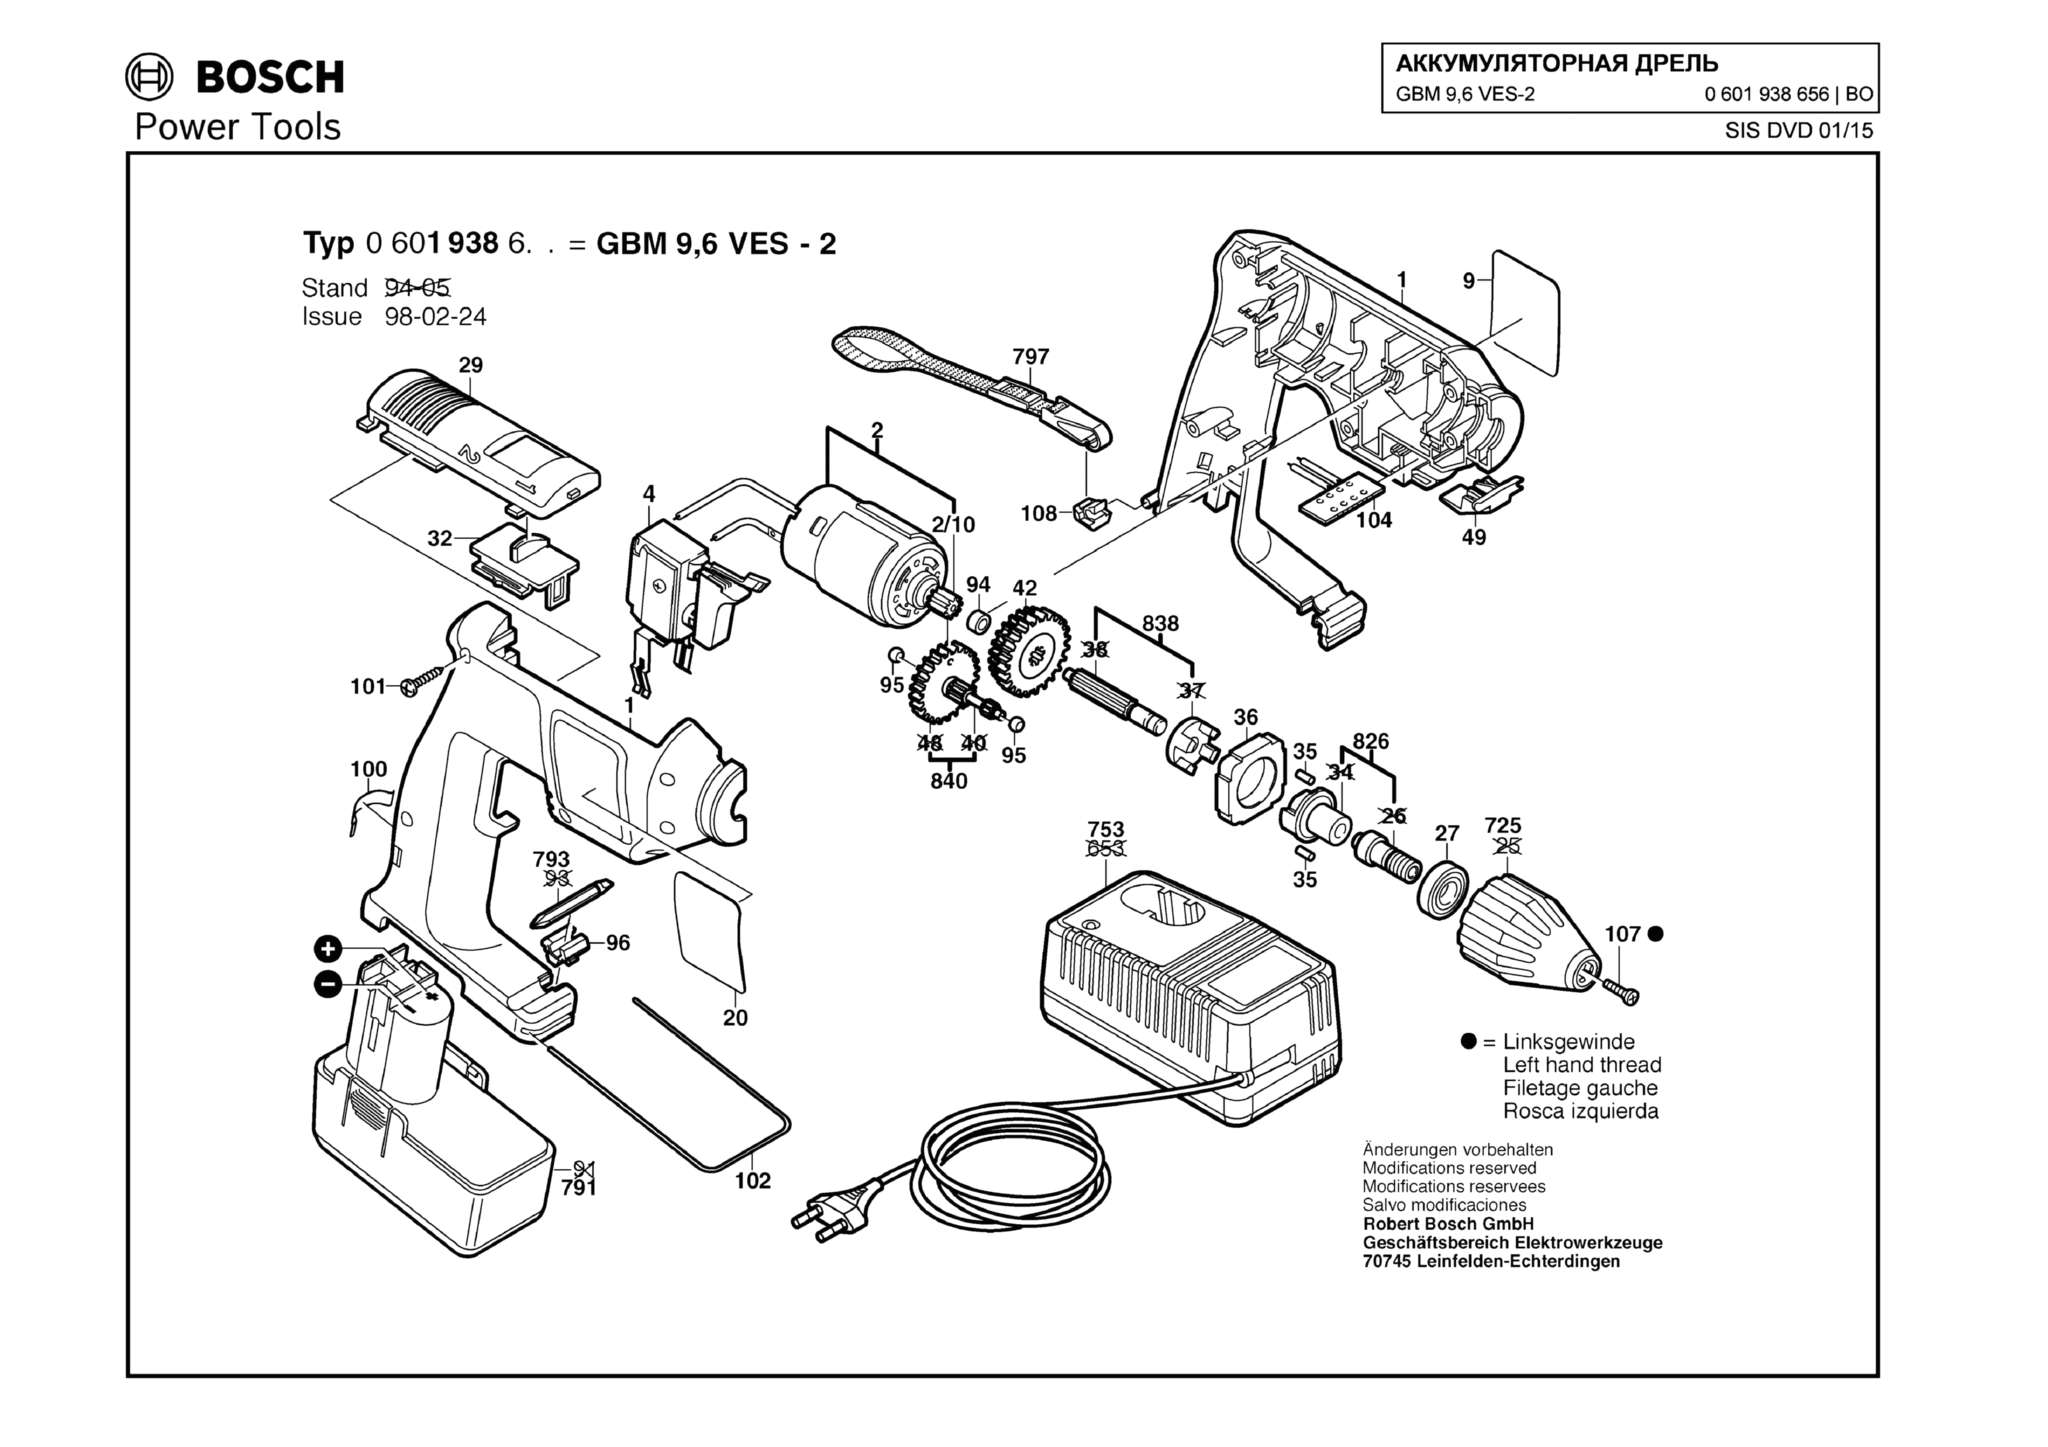 Запчасти, схема и деталировка Bosch GBM 9,6 VES-2 (ТИП 0601938656)